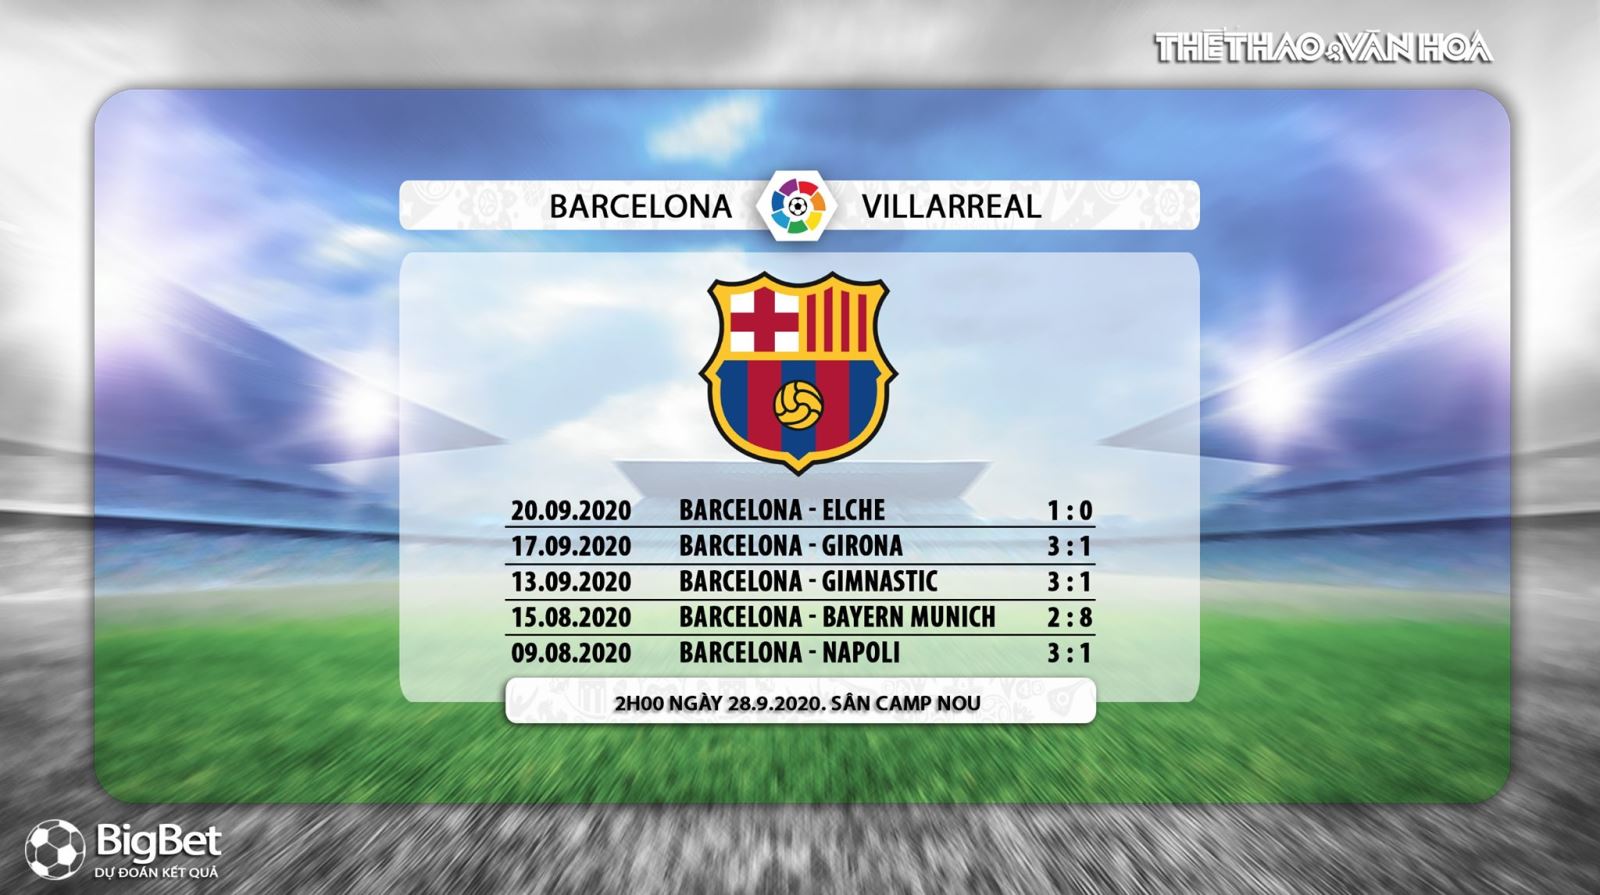 Barcelona vs Villarreal, Barcelona, Villarreal, so kèo Barcelona vs Villarreal, dự đoán Barcelona vs Villarreal, nhận định Barcelona vs Villarreal